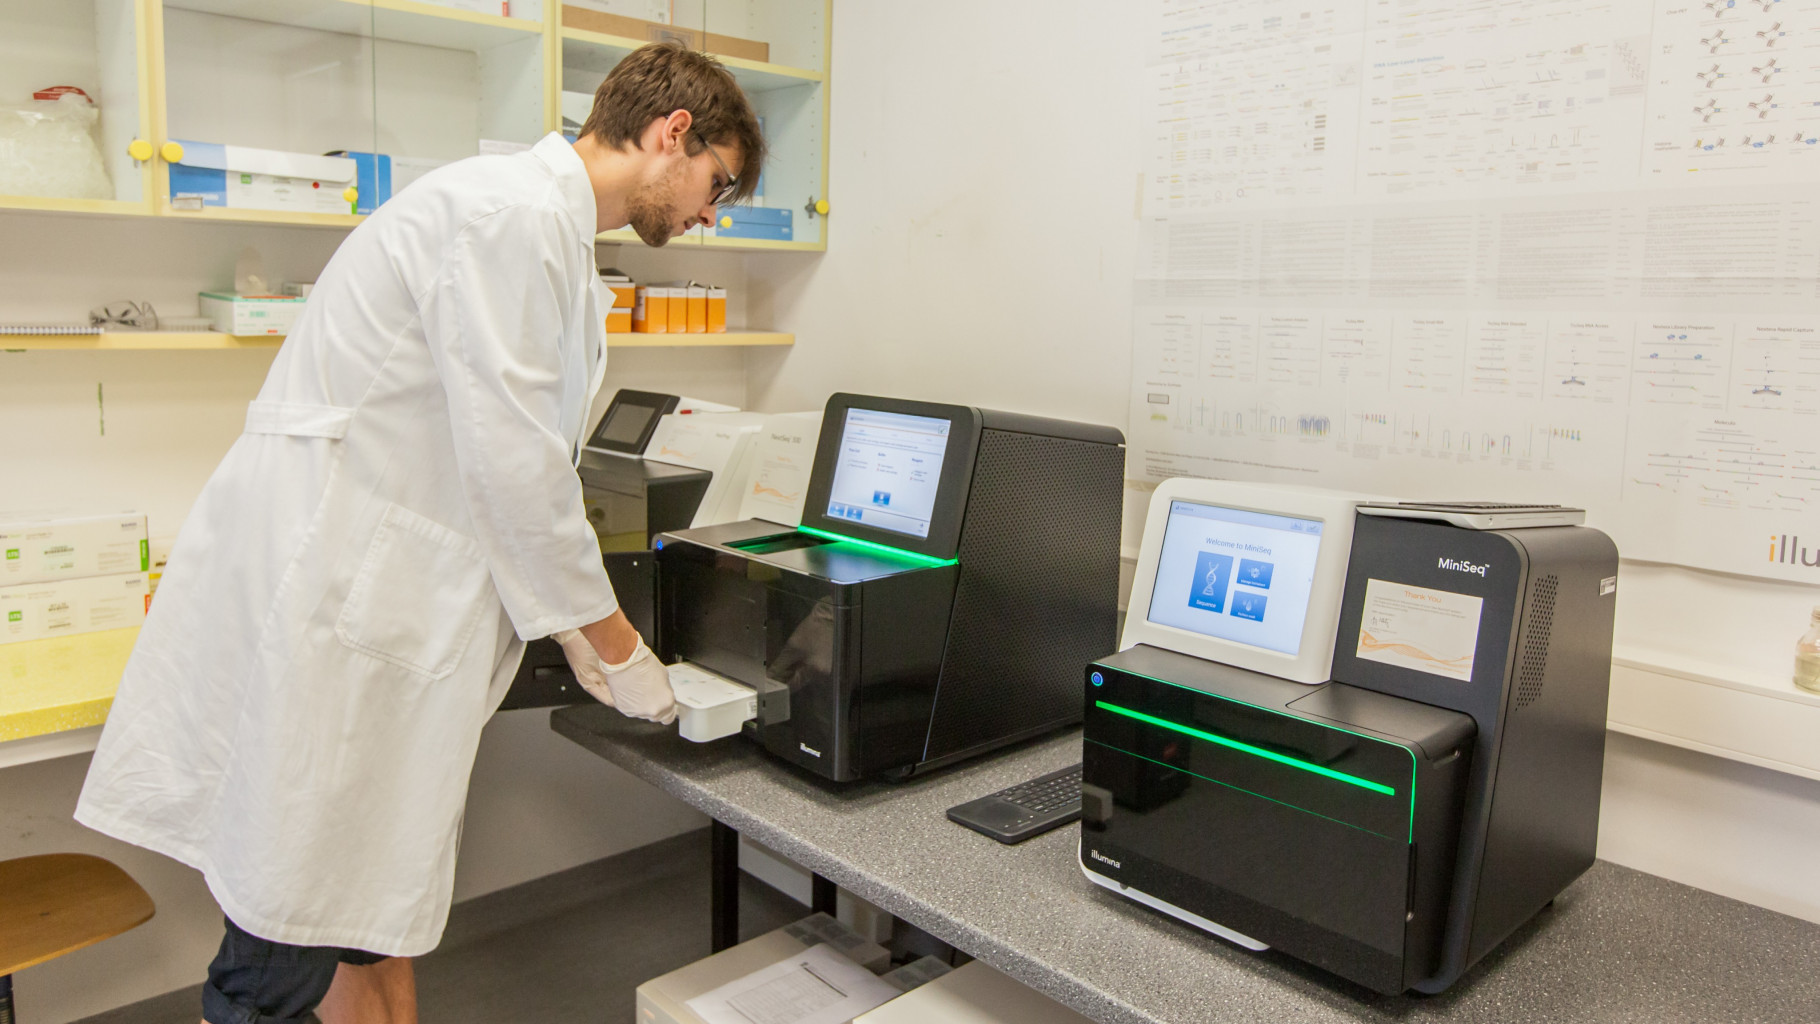 Hrvatski znanstvenici sekvencirali genom virusa iz pacjenata u RH